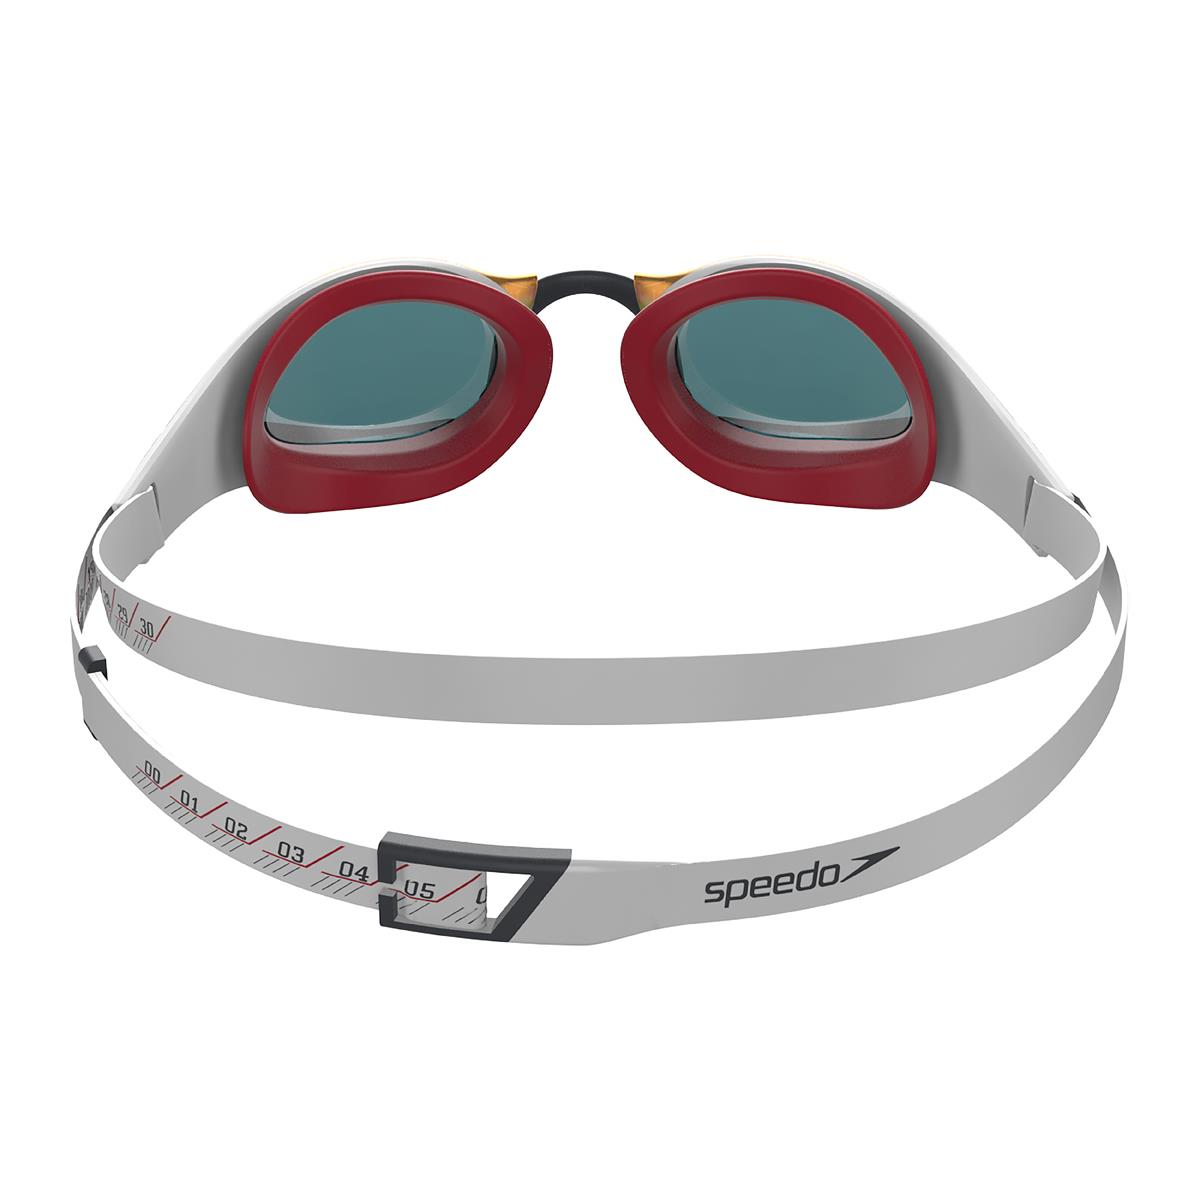 Speedo Fastskin Pure Focus Ogledalo očala - Bela/ Phoenix Rdeče/ ZDA Oglje/ Ruby Ogledalo